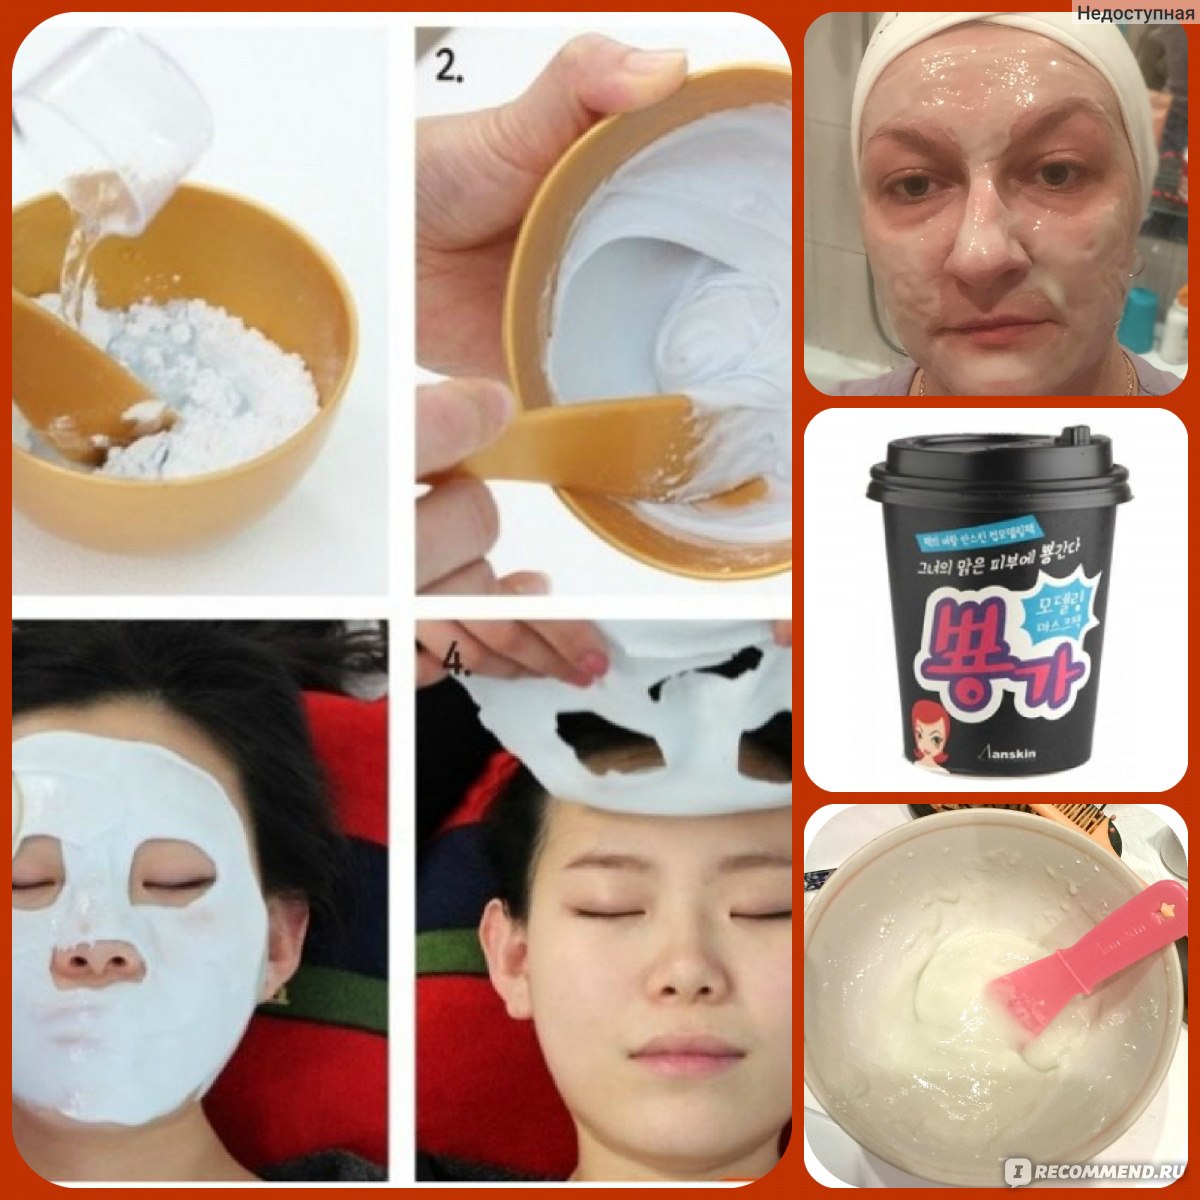 Как наносить альгинатную маску в домашних